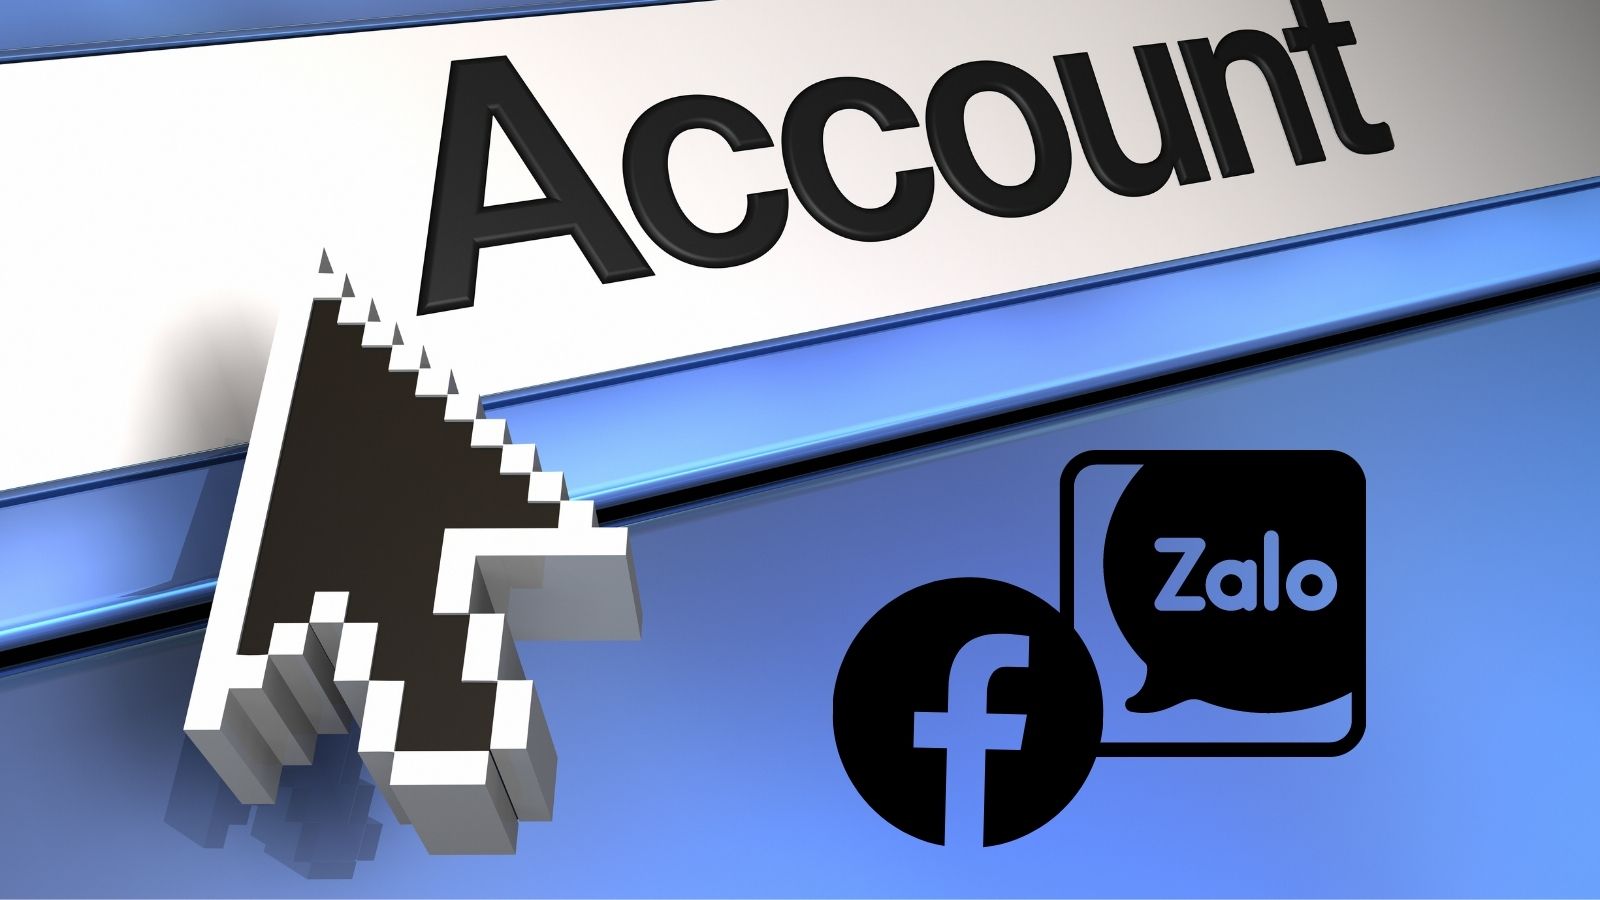 Mách bạn cách tìm Facebook qua Zalo - xin “in tư” Facebook là chuyện nhỏ